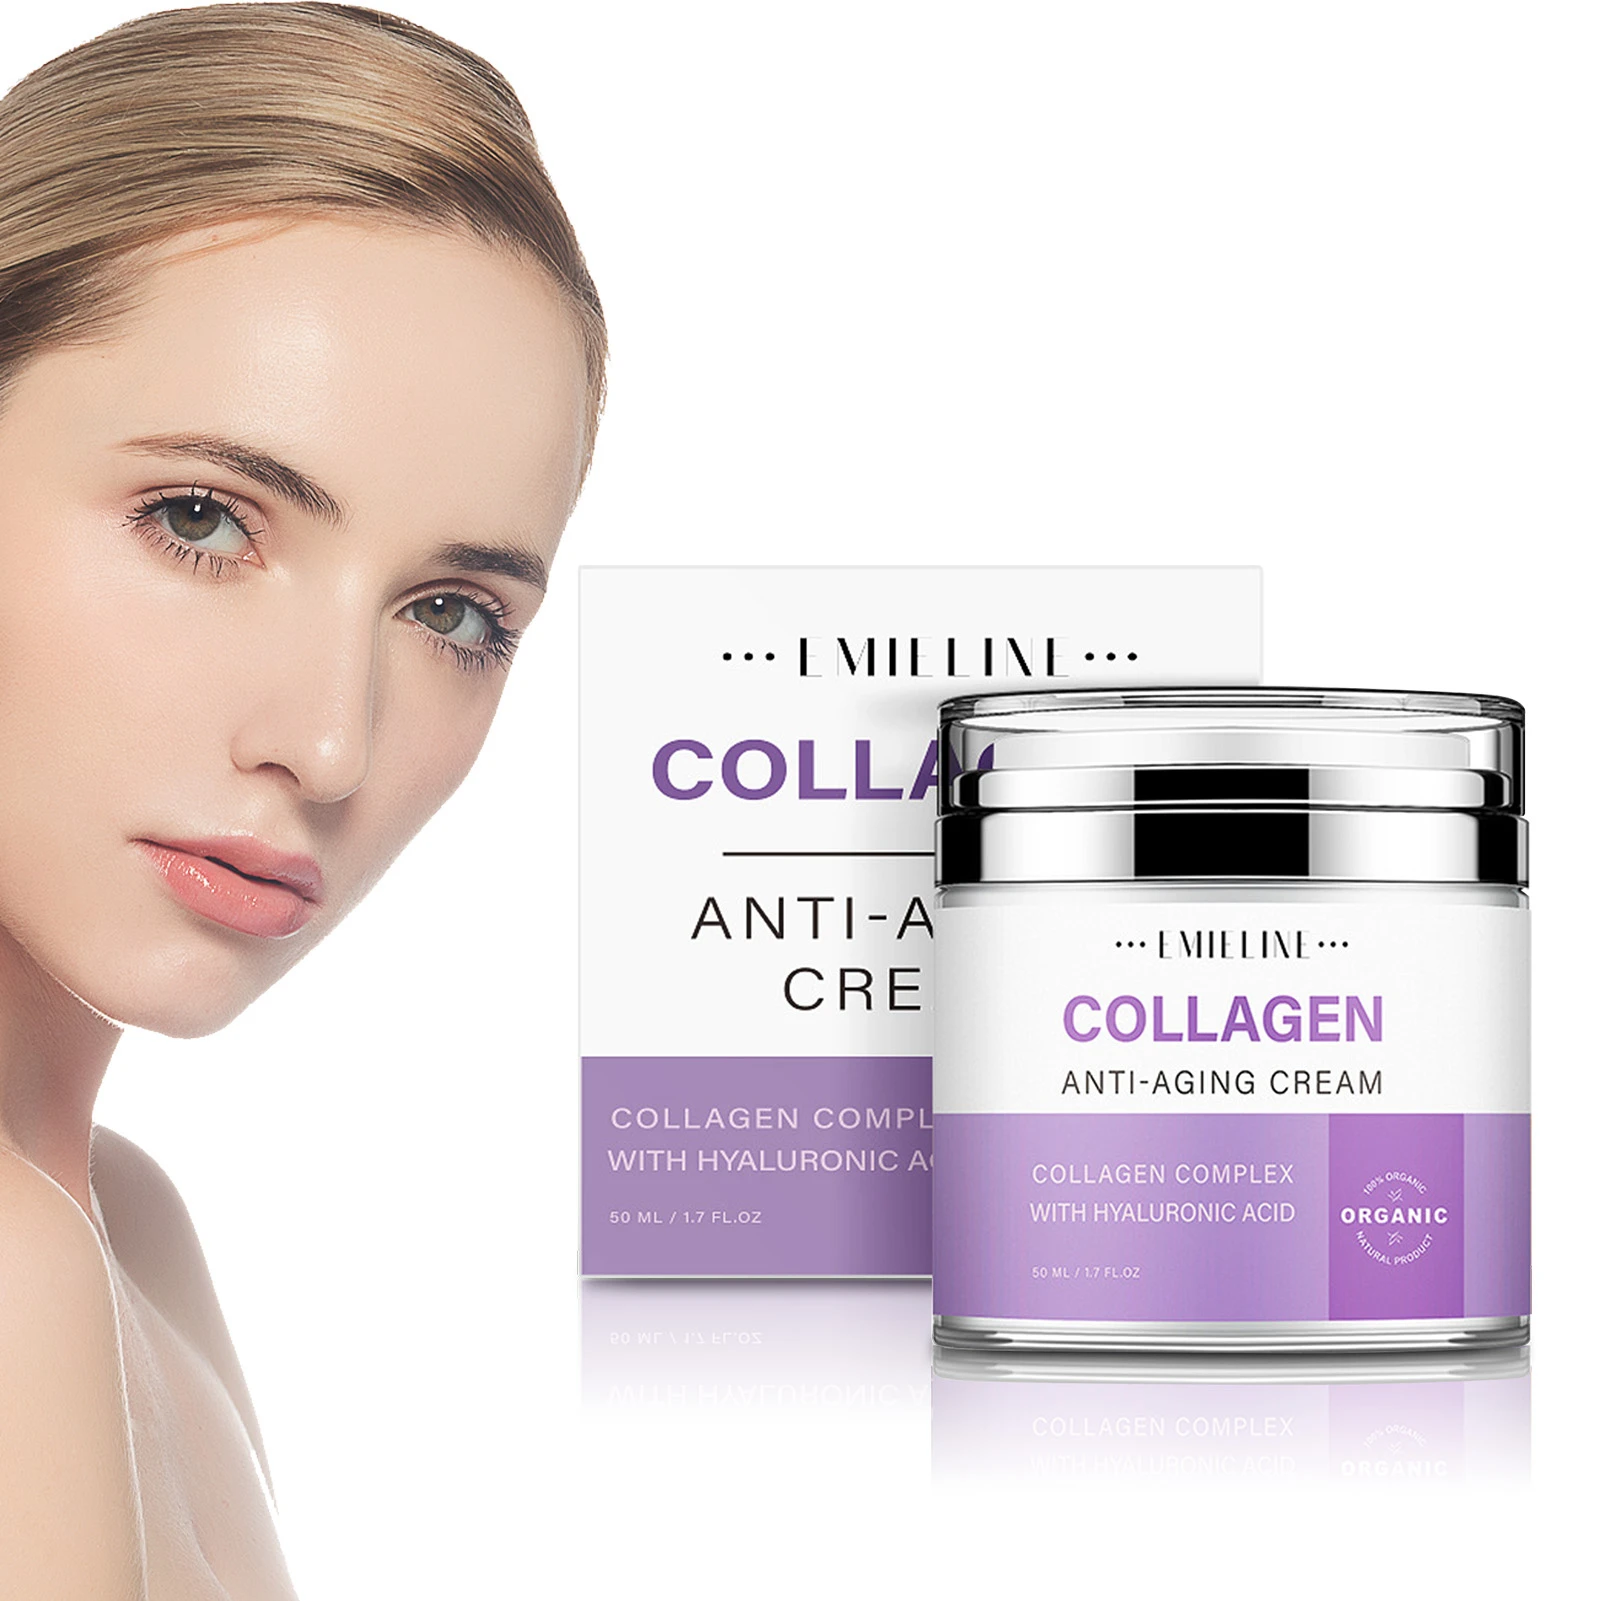 

Collagen Cream Moisturizer Collagen Cream Collagen Hyaluronic Acid Face Cream For Skin Firming Tightening Whitening Moisturizing